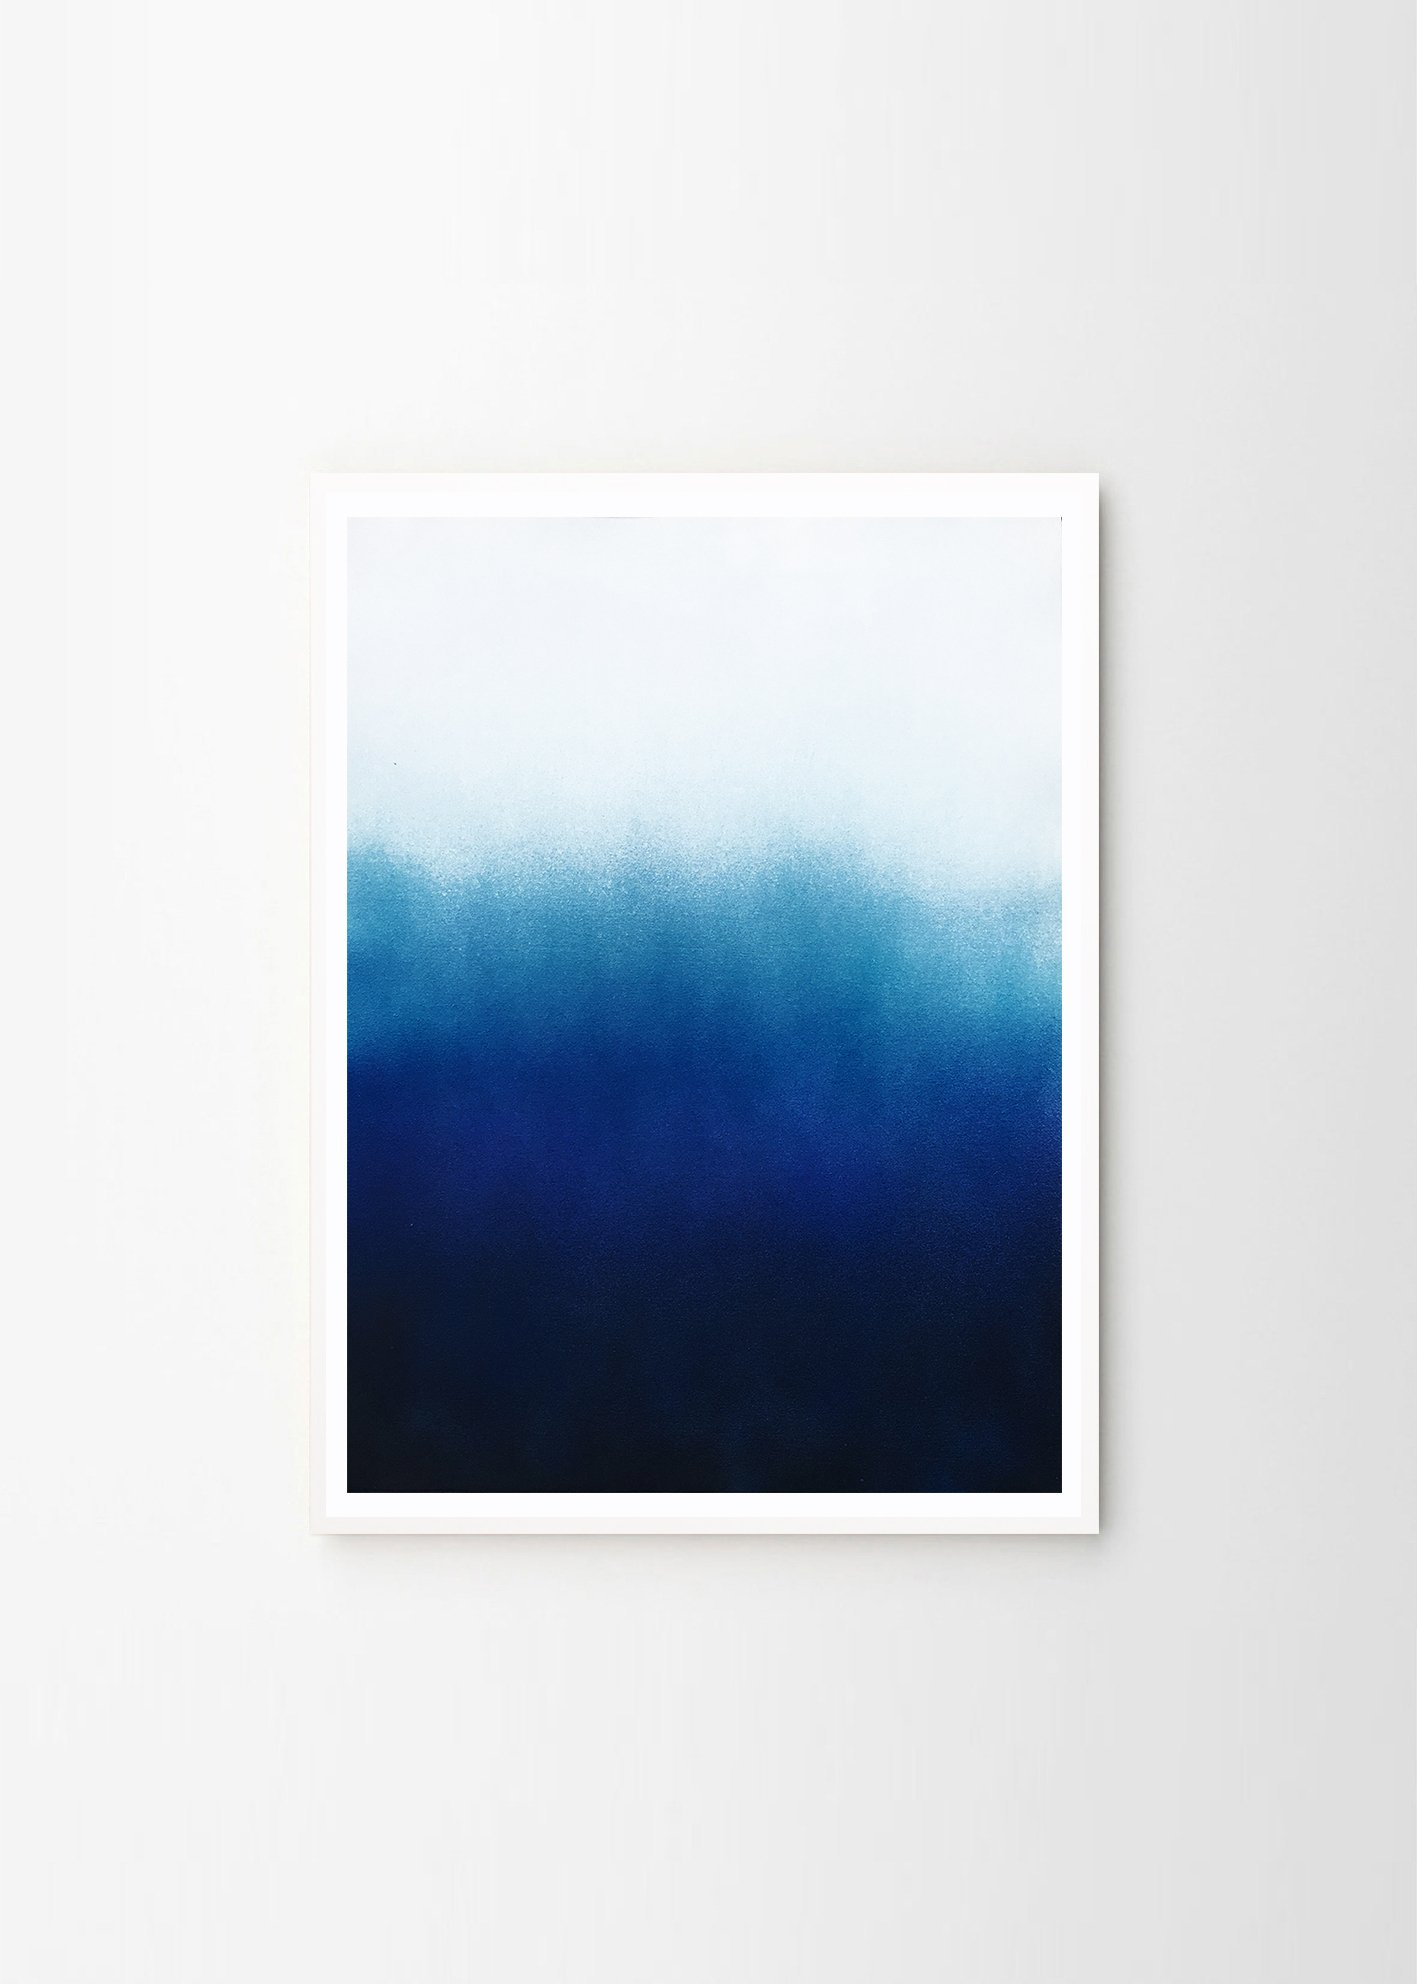 anne-nowak-northern-light-blue-frame-white.jpg